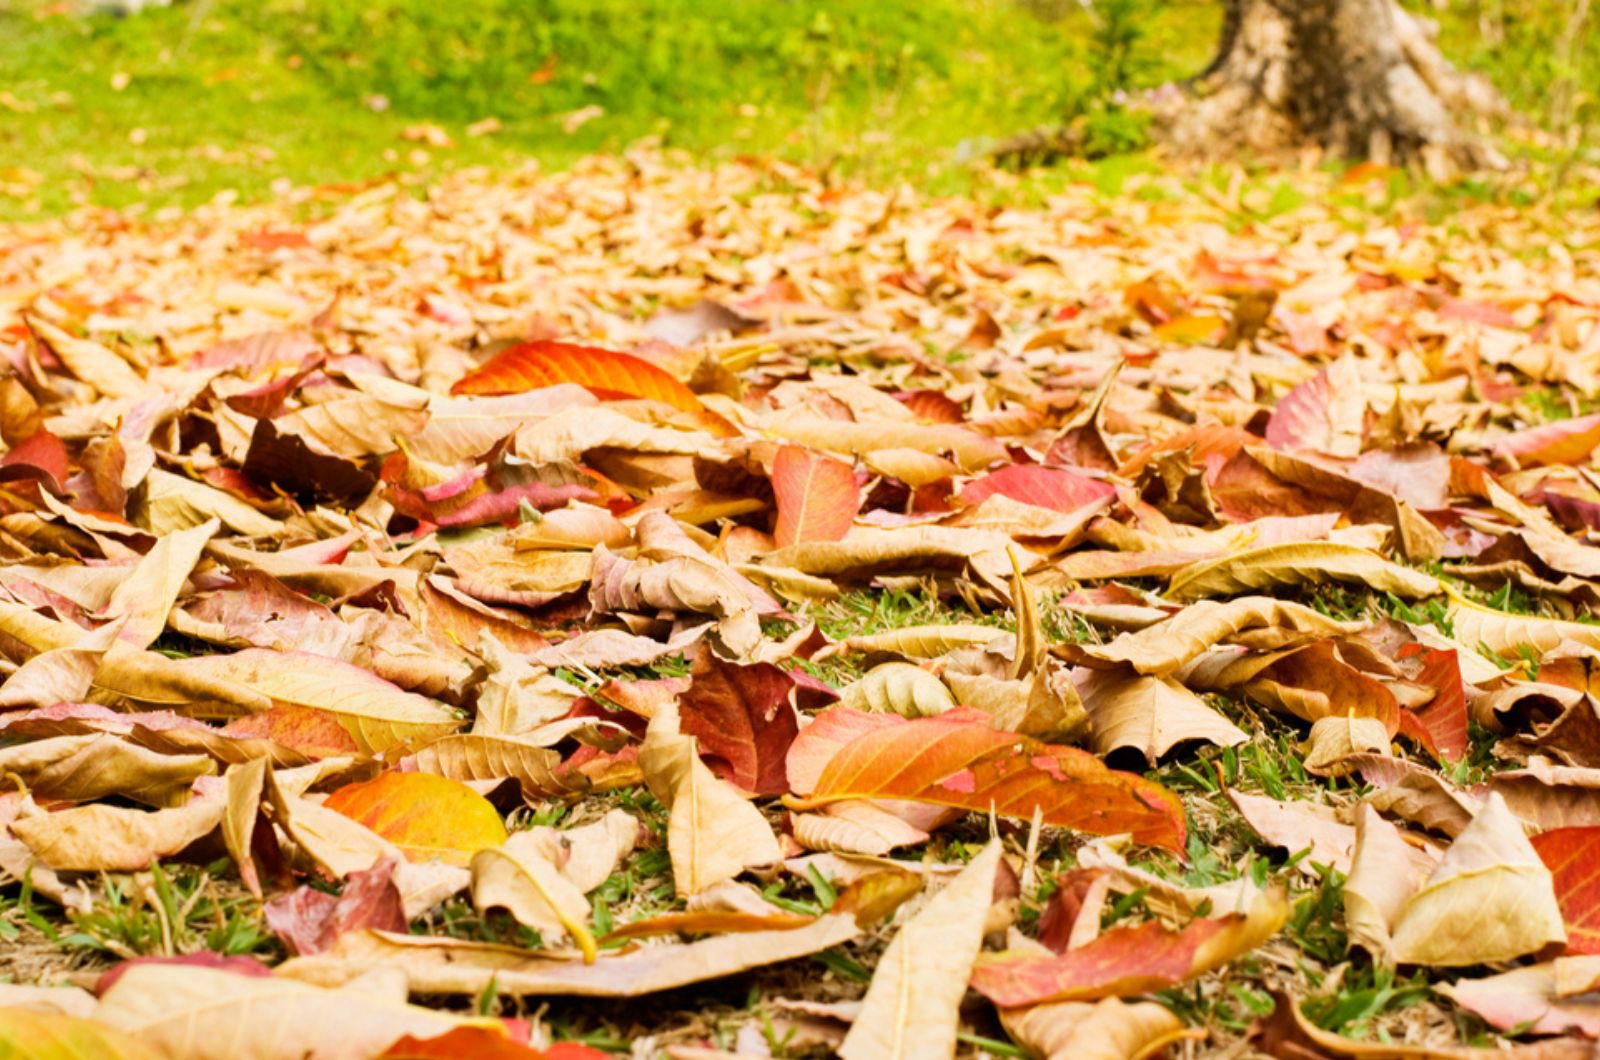 leaves in yard